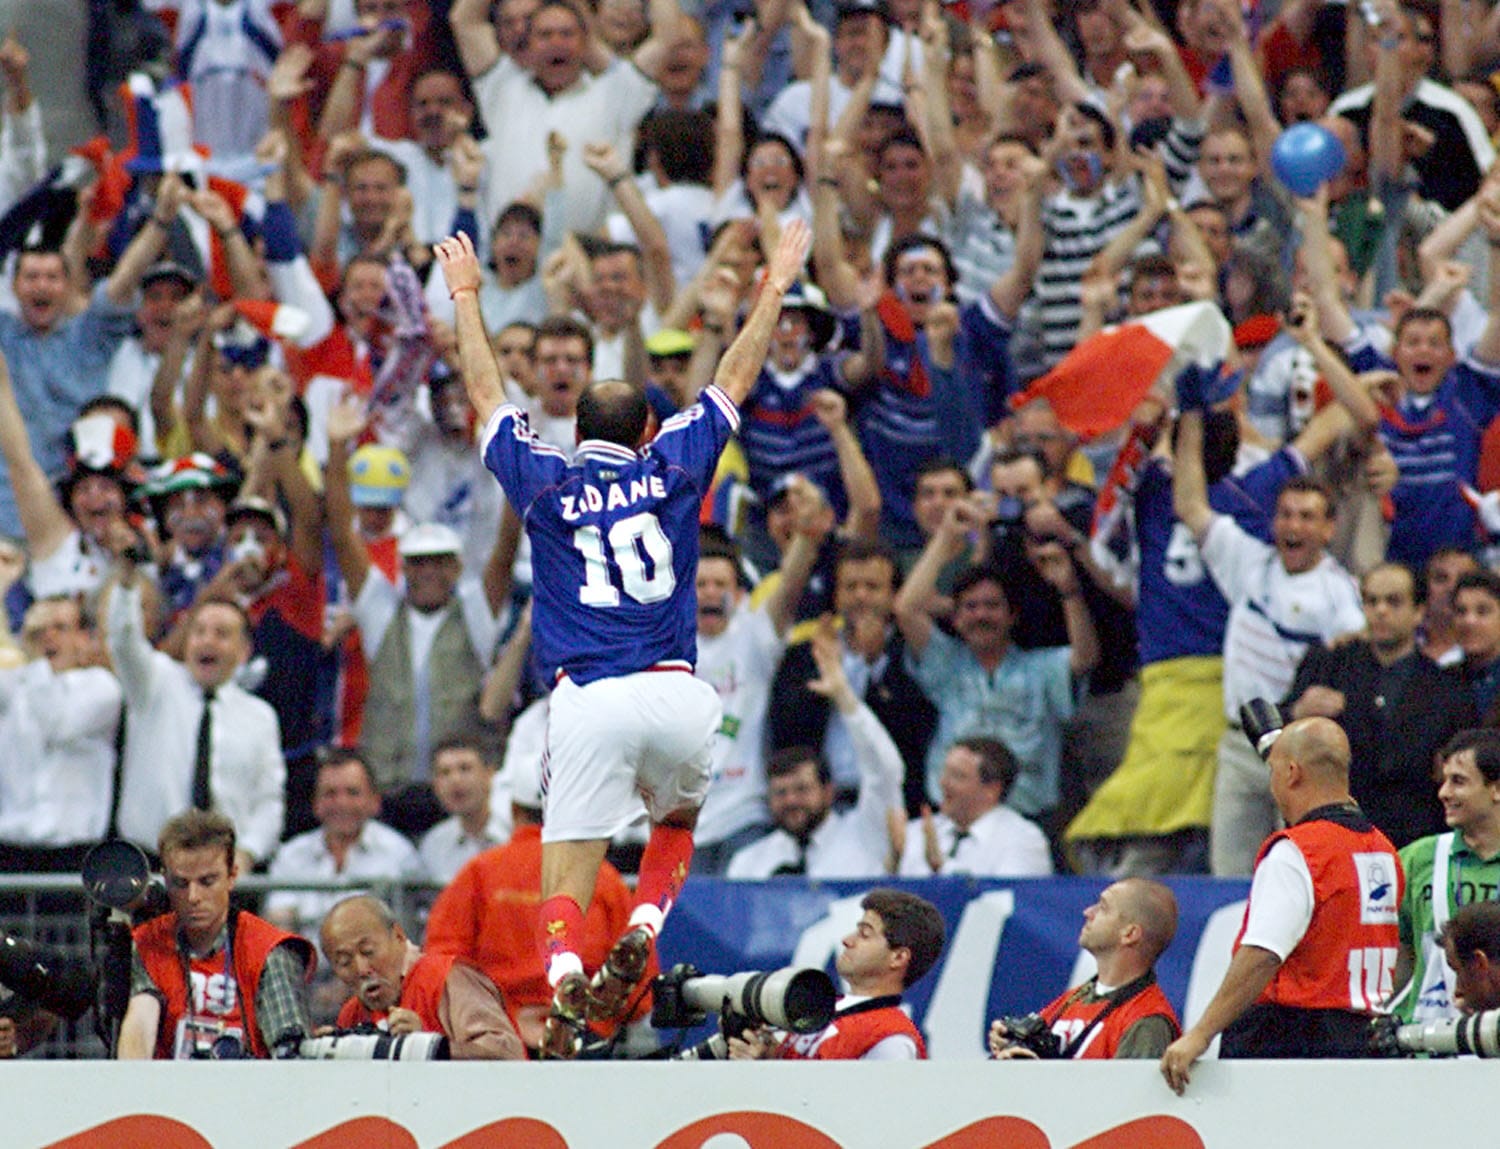 France - Campionati mondiali di calcio - Zidane - Maglia da calcio